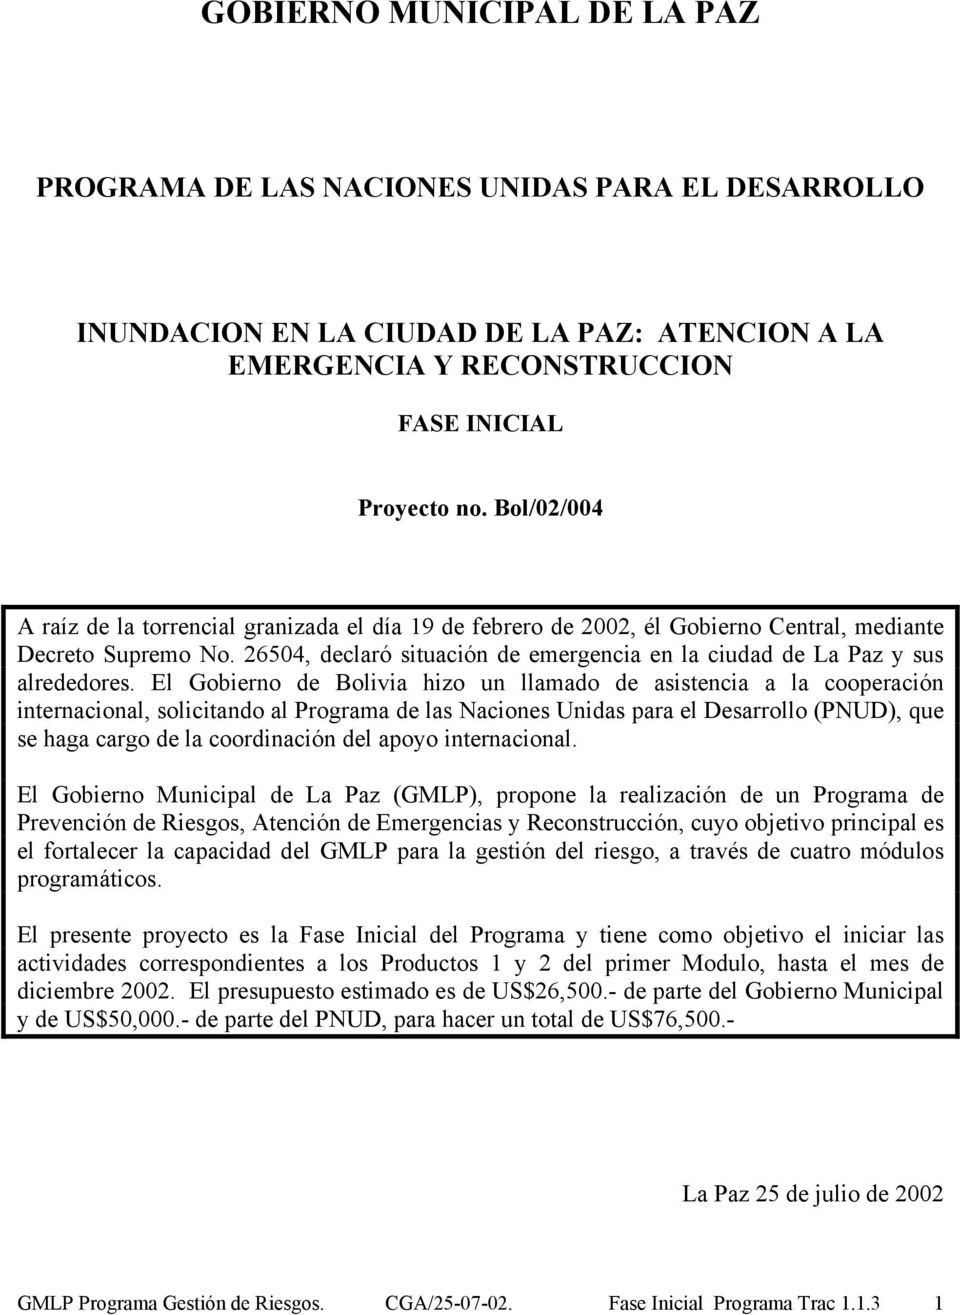 26504, declaró situación de emergencia en la ciudad de La Paz y sus alrededores.